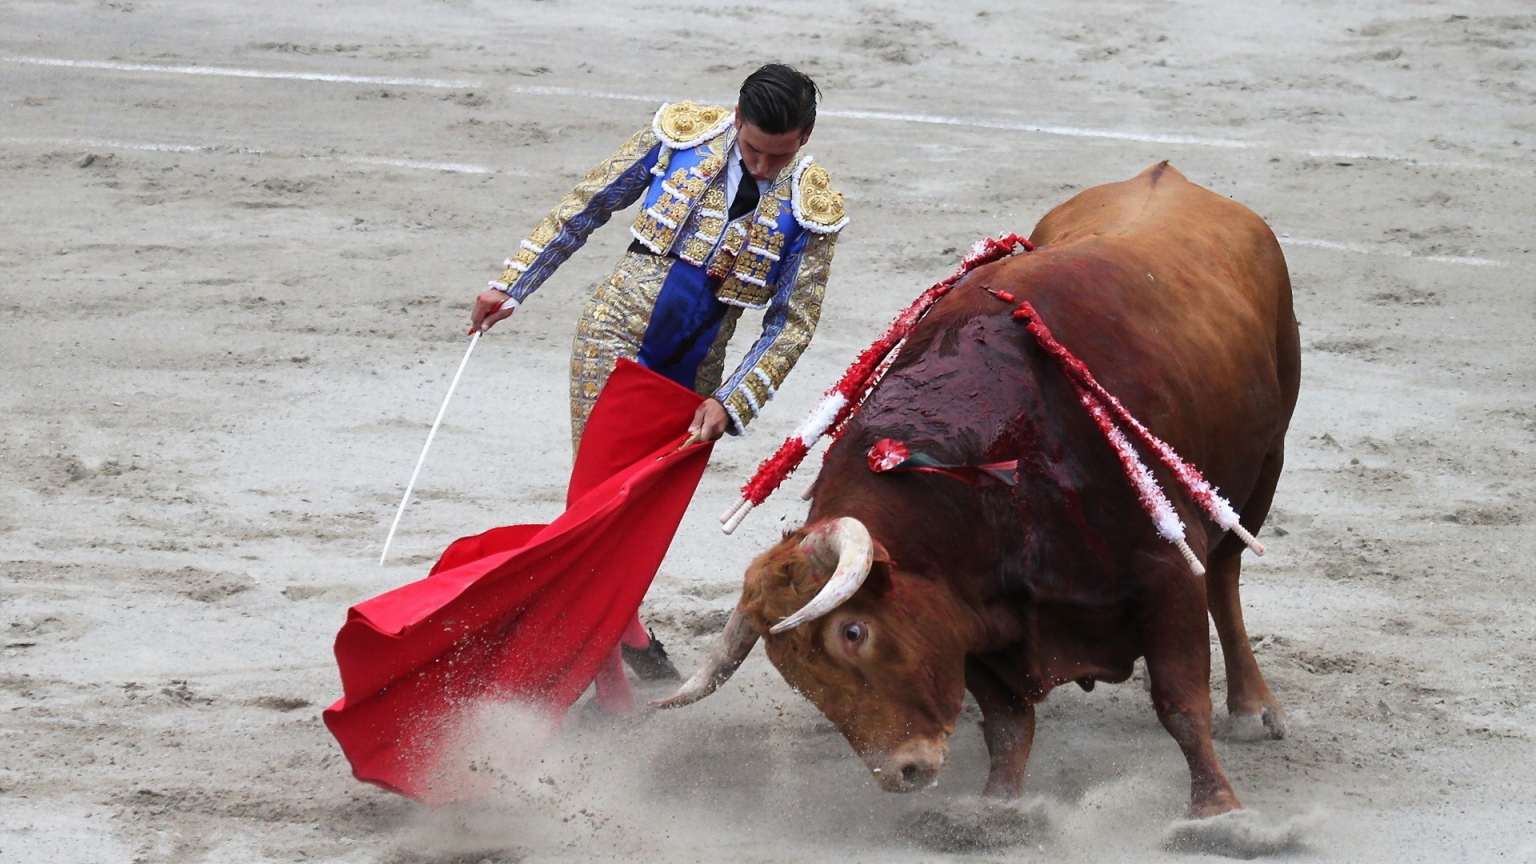 Matador Bullfight for 1536 x 864 HDTV resolution